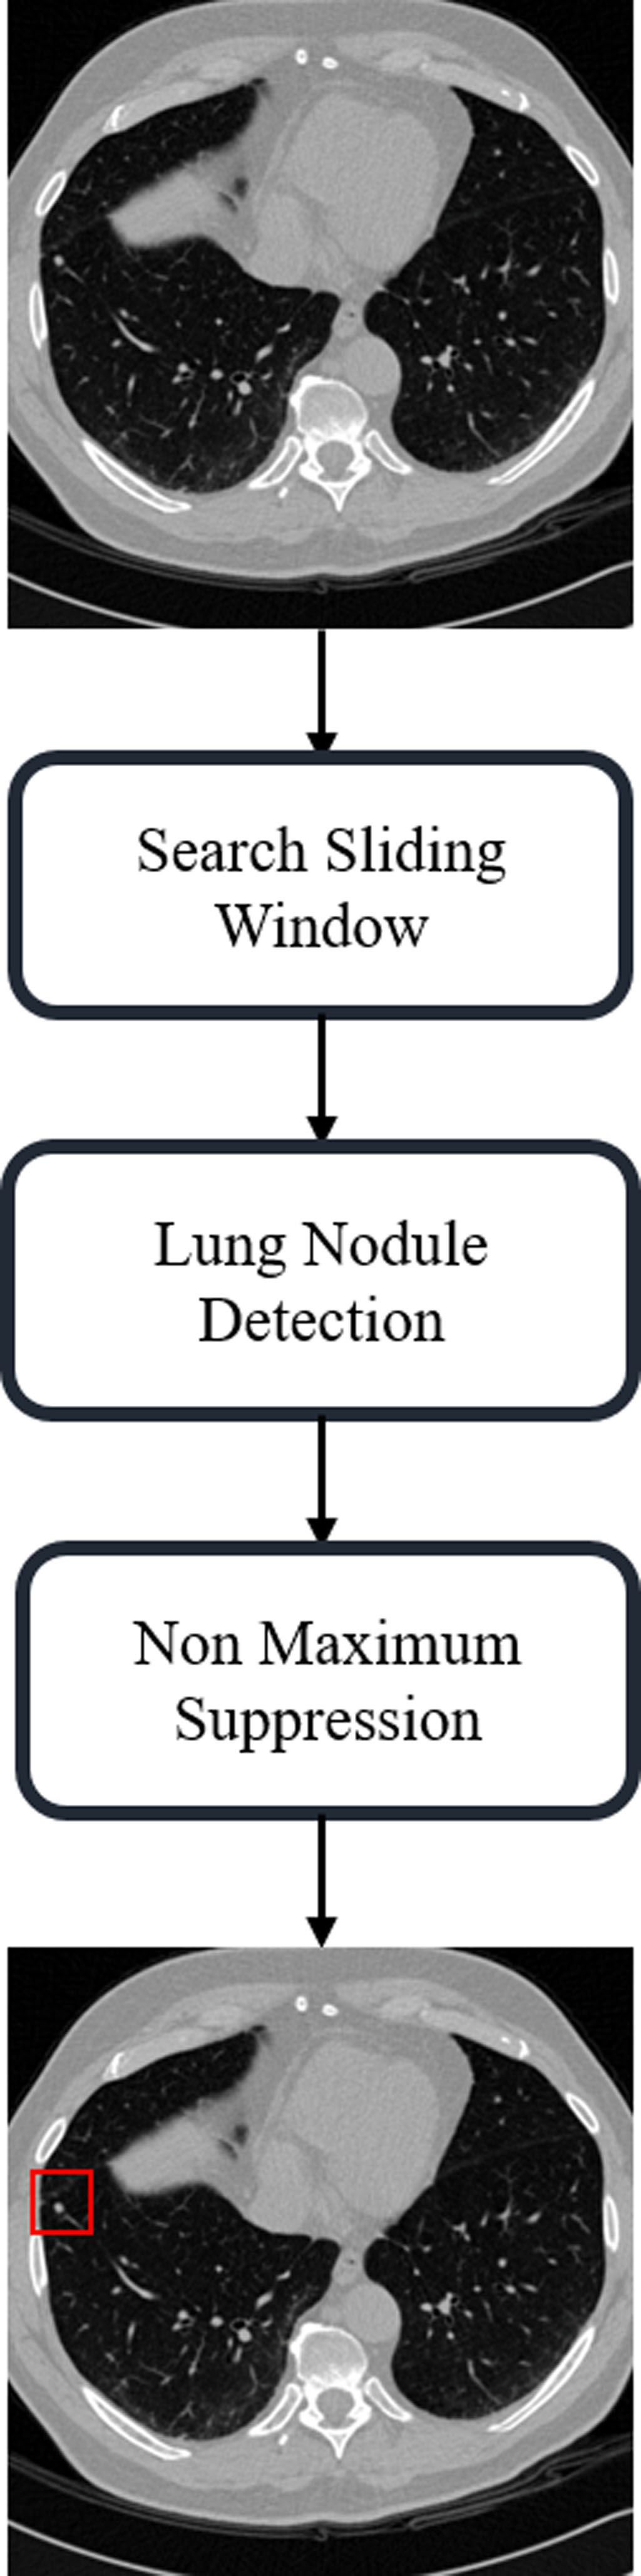 應用三維膠囊網路於肺部電腦斷層影像之結節偵測